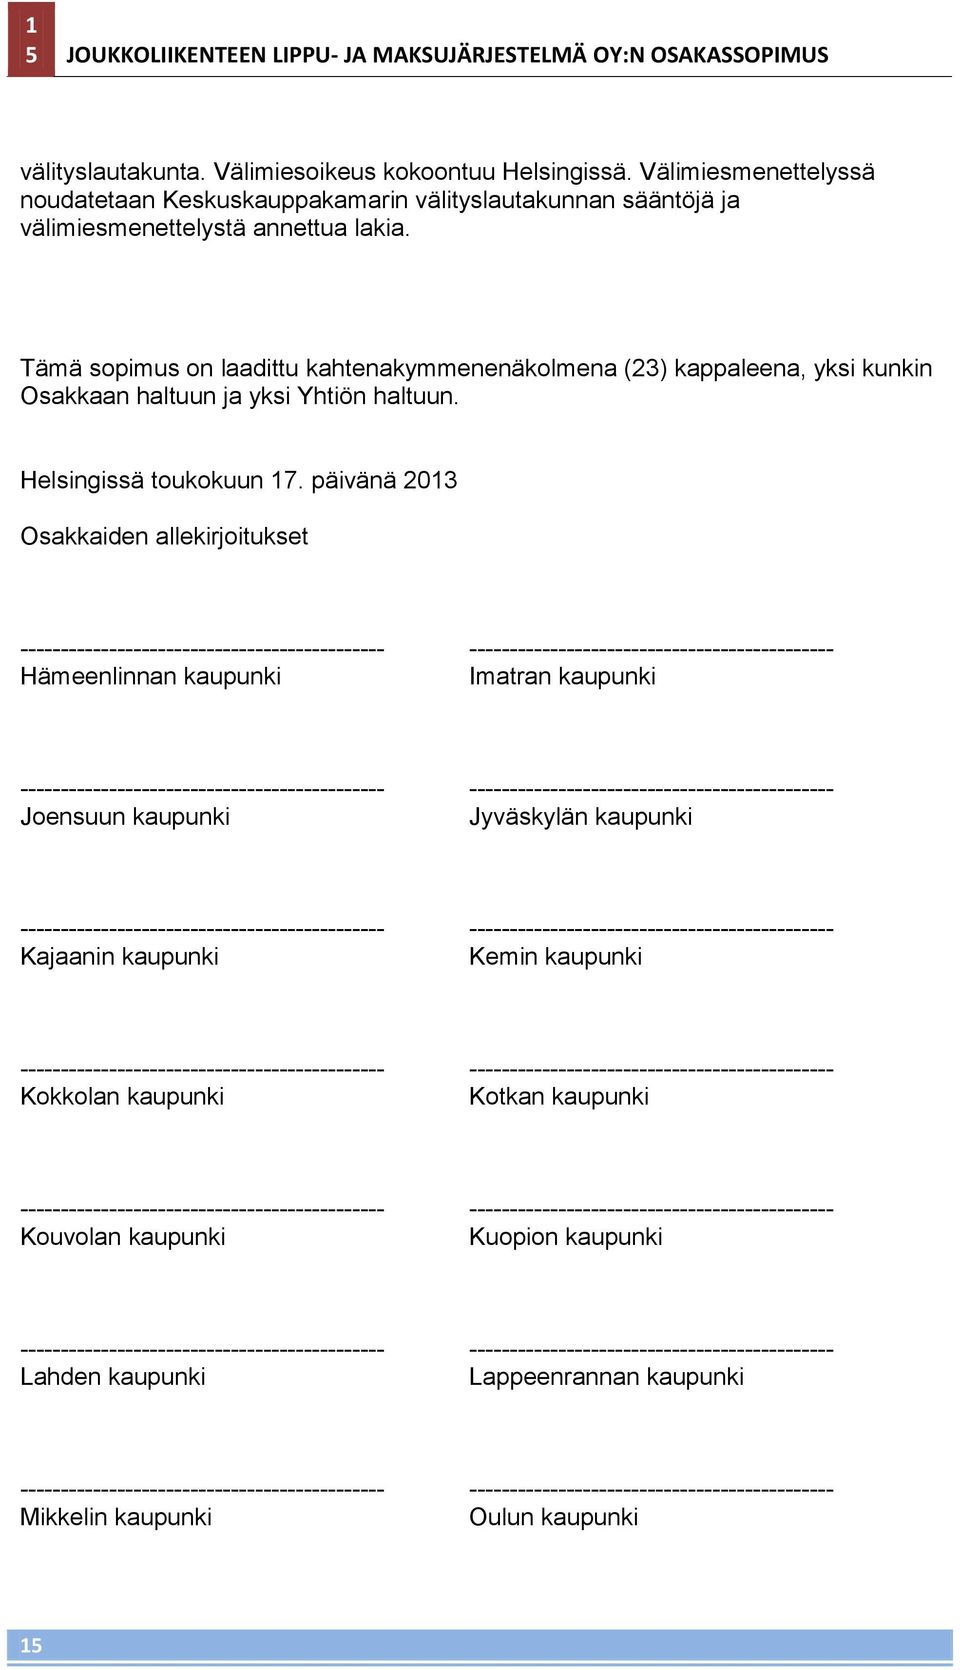 Tämä sopimus on laadittu kahtenakymmenenäkolmena (23) kappaleena, yksi kunkin Osakkaan haltuun ja yksi Yhtiön haltuun. Helsingissä toukokuun 17.